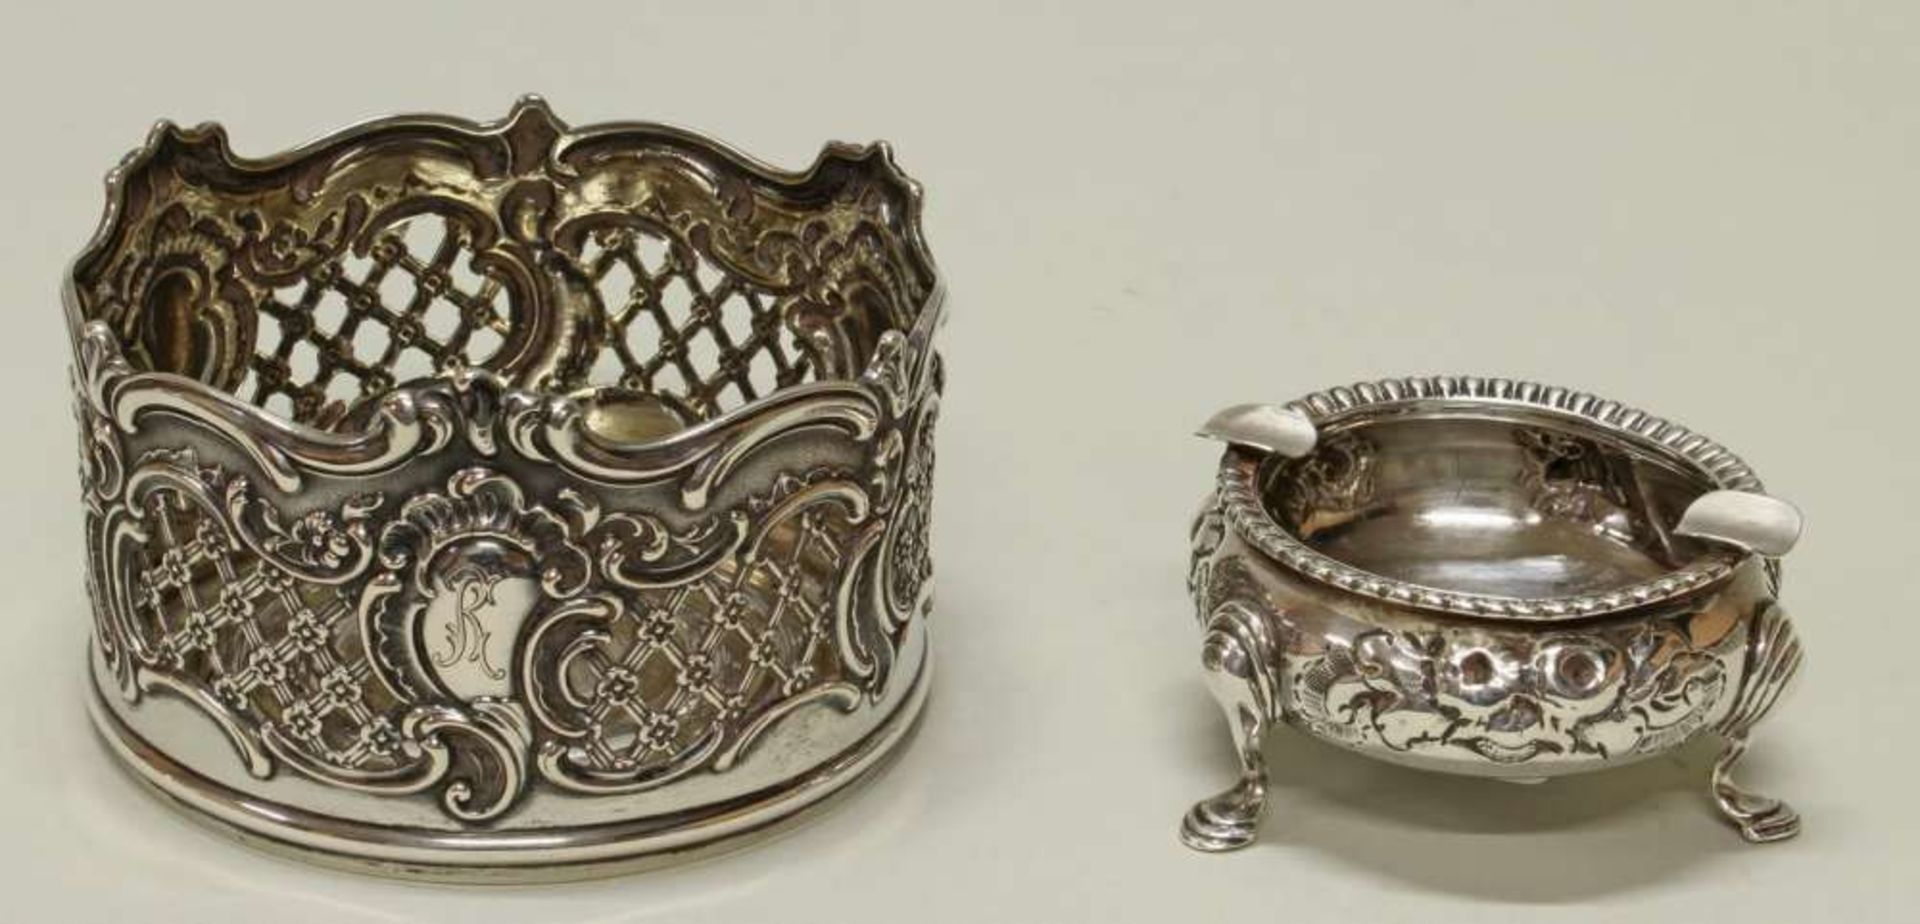 Reserve: 80 EUR        Aschenbecher, Silber 925, London, 1859, 3.5 cm hoch, ca. 72 g;